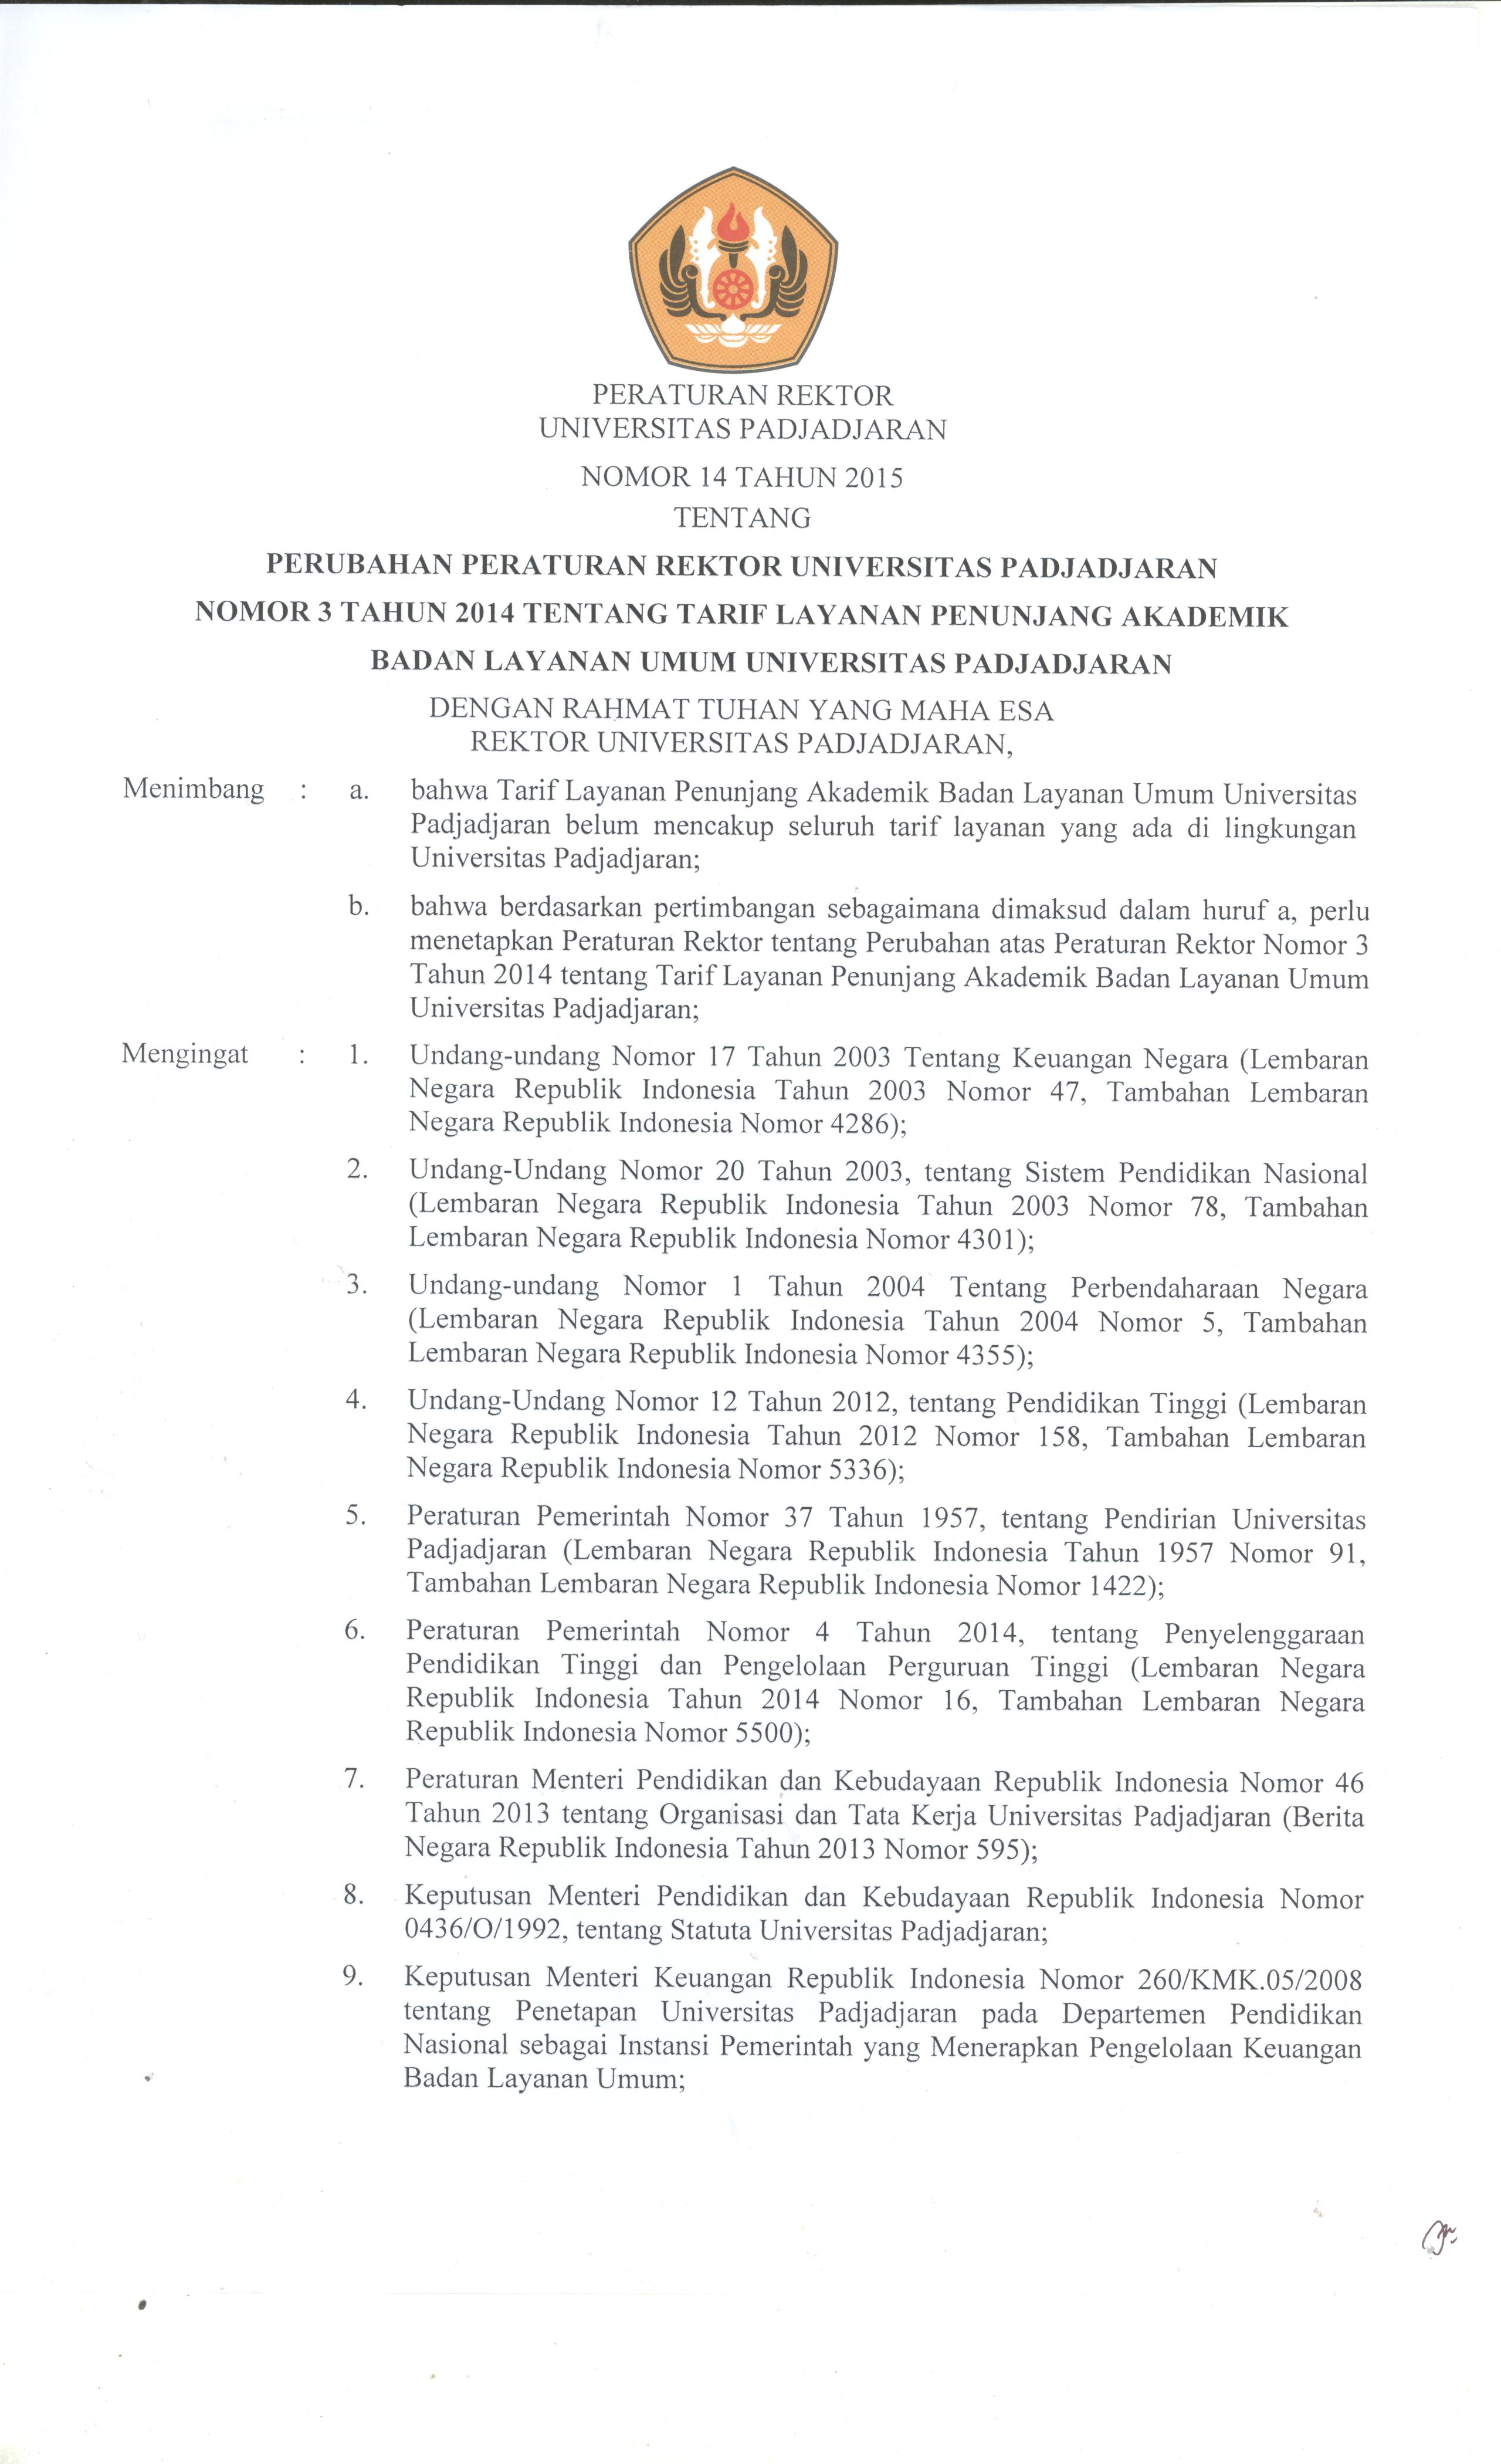 Peraturan Rektor Nomor 14 Tahun 2015 tentang Perubahan Peraturan Rektor Unpad Nomor 3 Tahun 2014 tentang Tarif Layanan Penunjang Akademik BLU Unpad